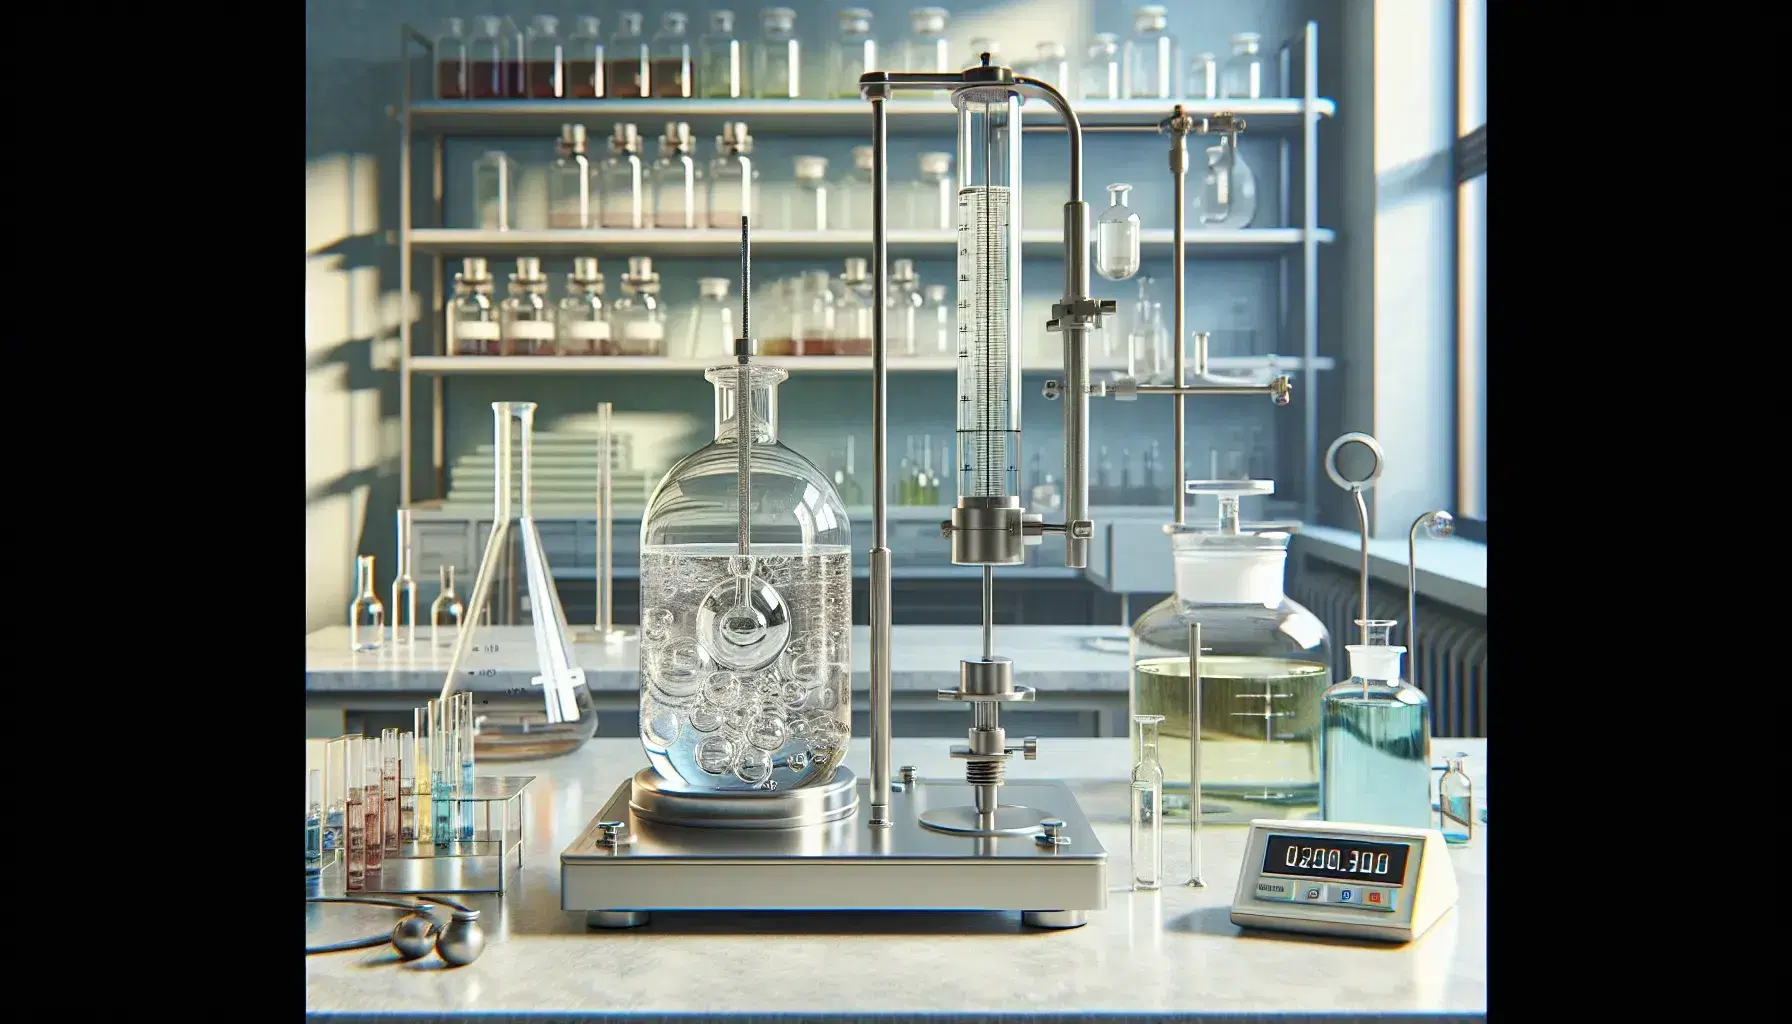 Laboratorio científico con equipo de termo dinámica, mesa con cilindro de vidrio y pistón, termómetro en líquido y balanza analítica.